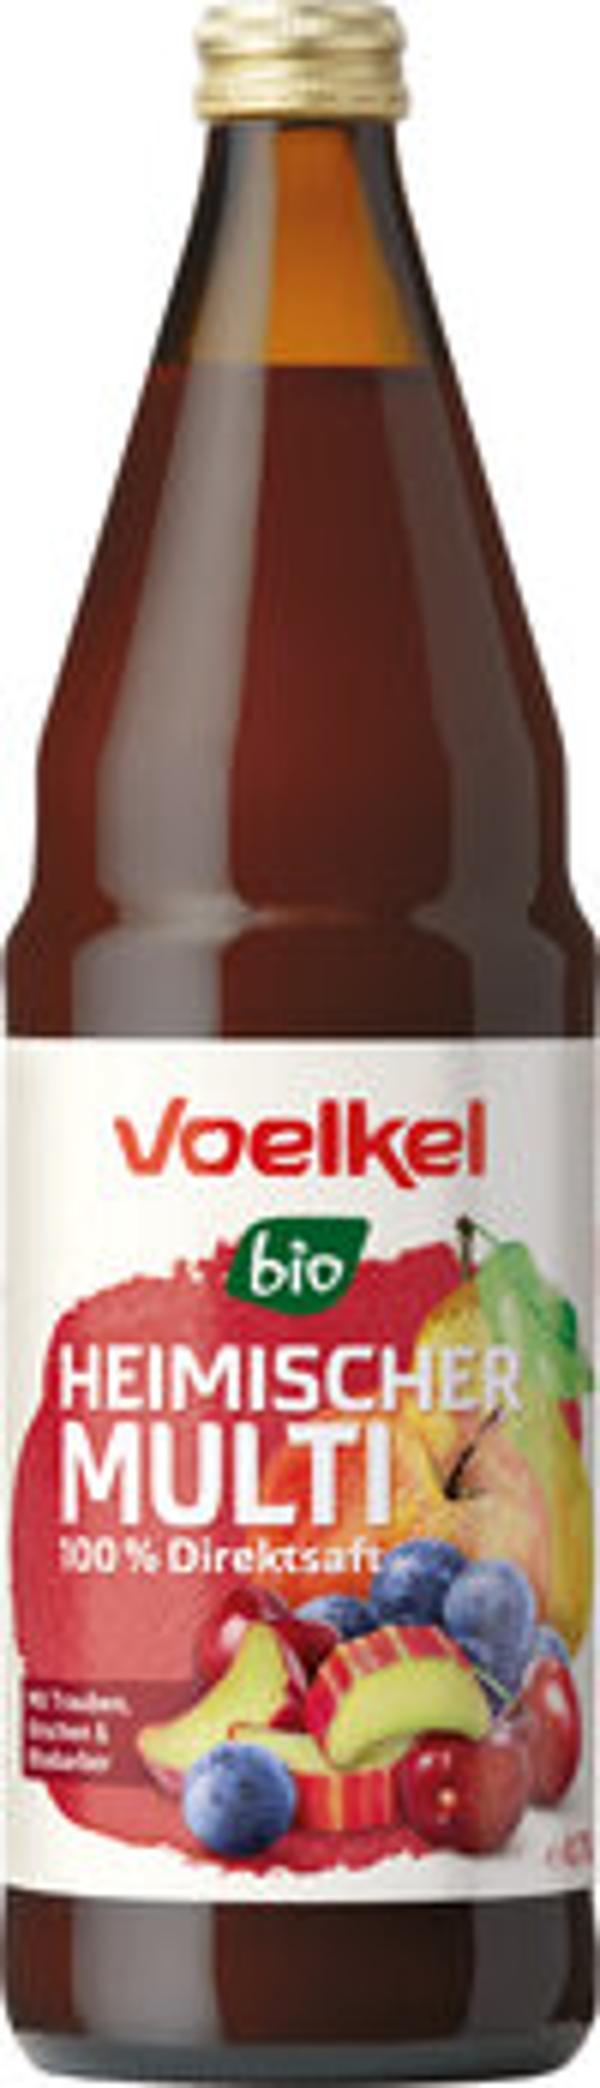 Produktfoto zu Heimischer Multi rot (Trauben, Kirschen ,Rhababer) 0,7L VOE